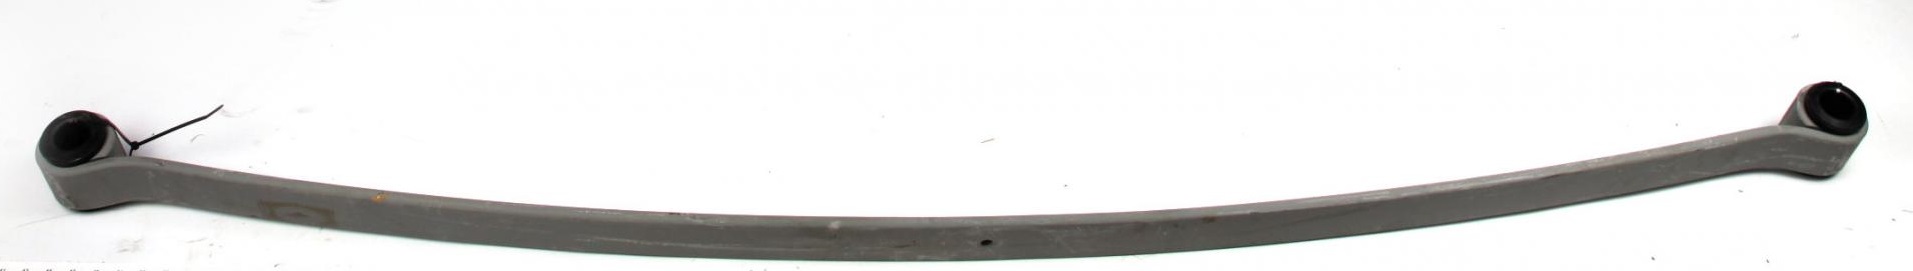 Рессора задняя коренная MB 408-508 (старый тип) (60/800/800) 11mm.